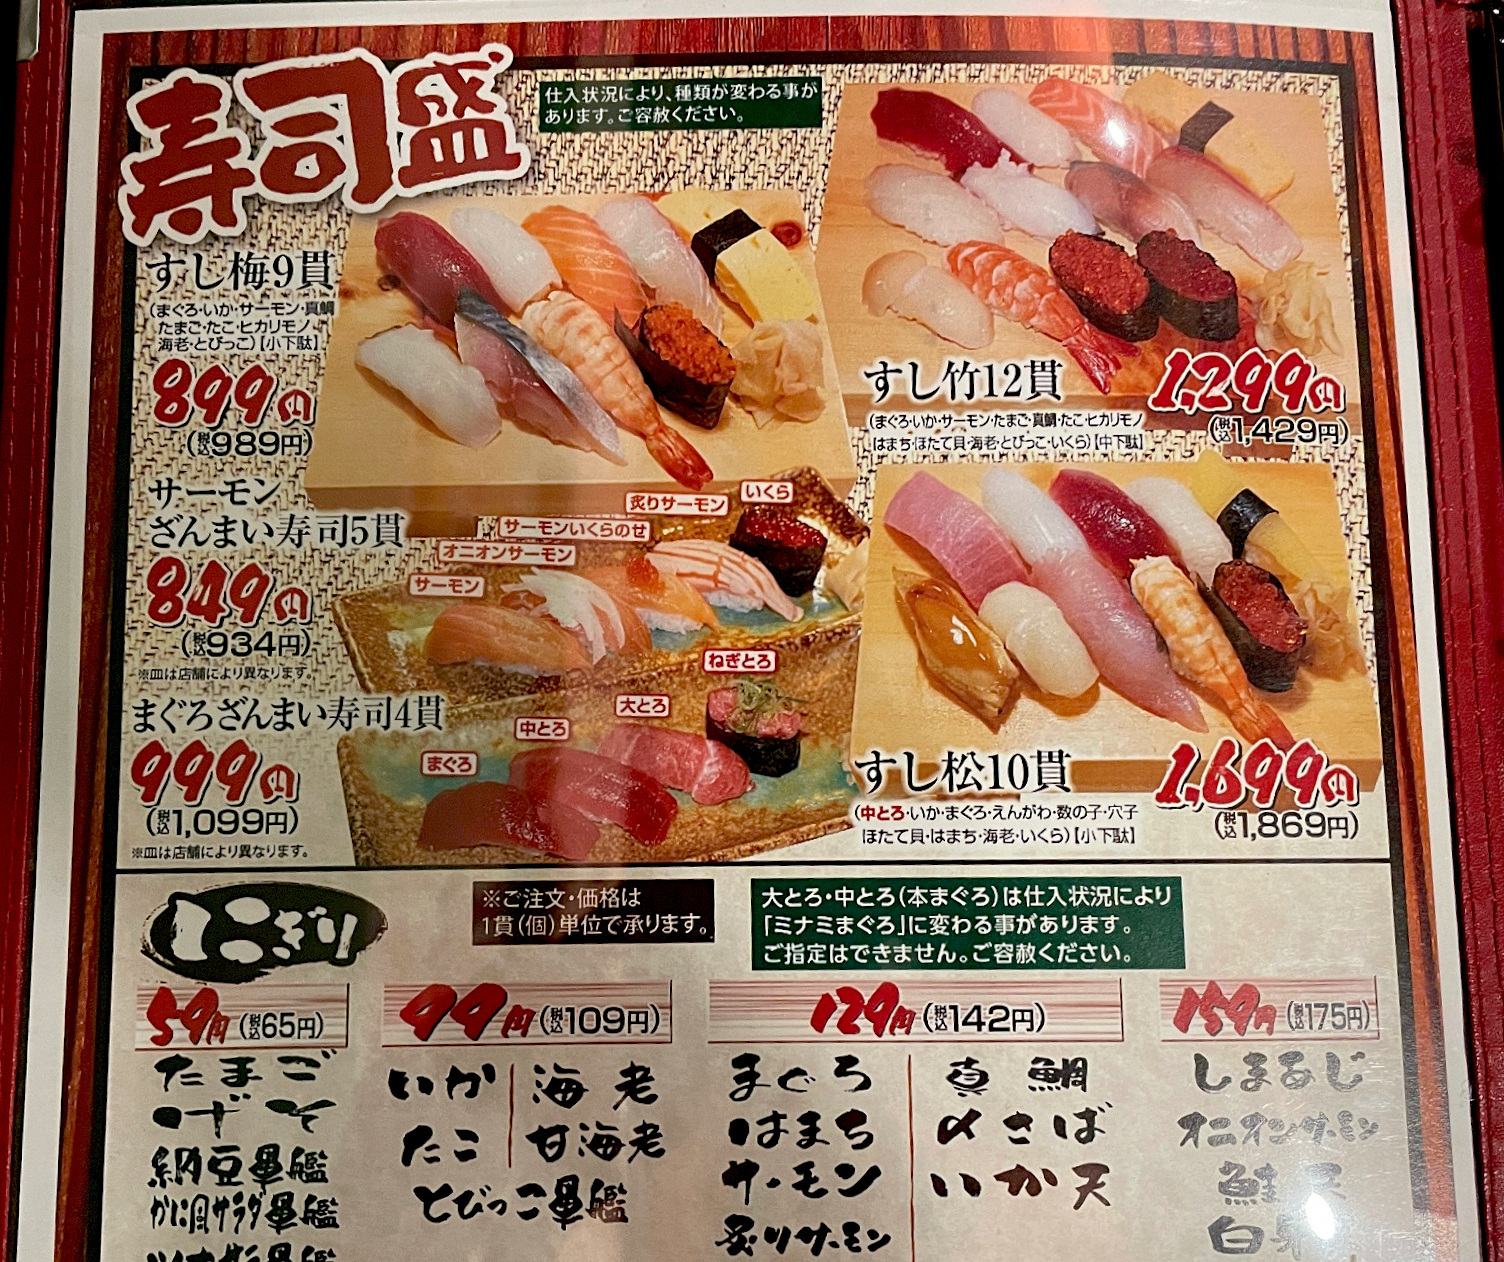 寿司盛が安い。単品も60円くらいから食べられます。